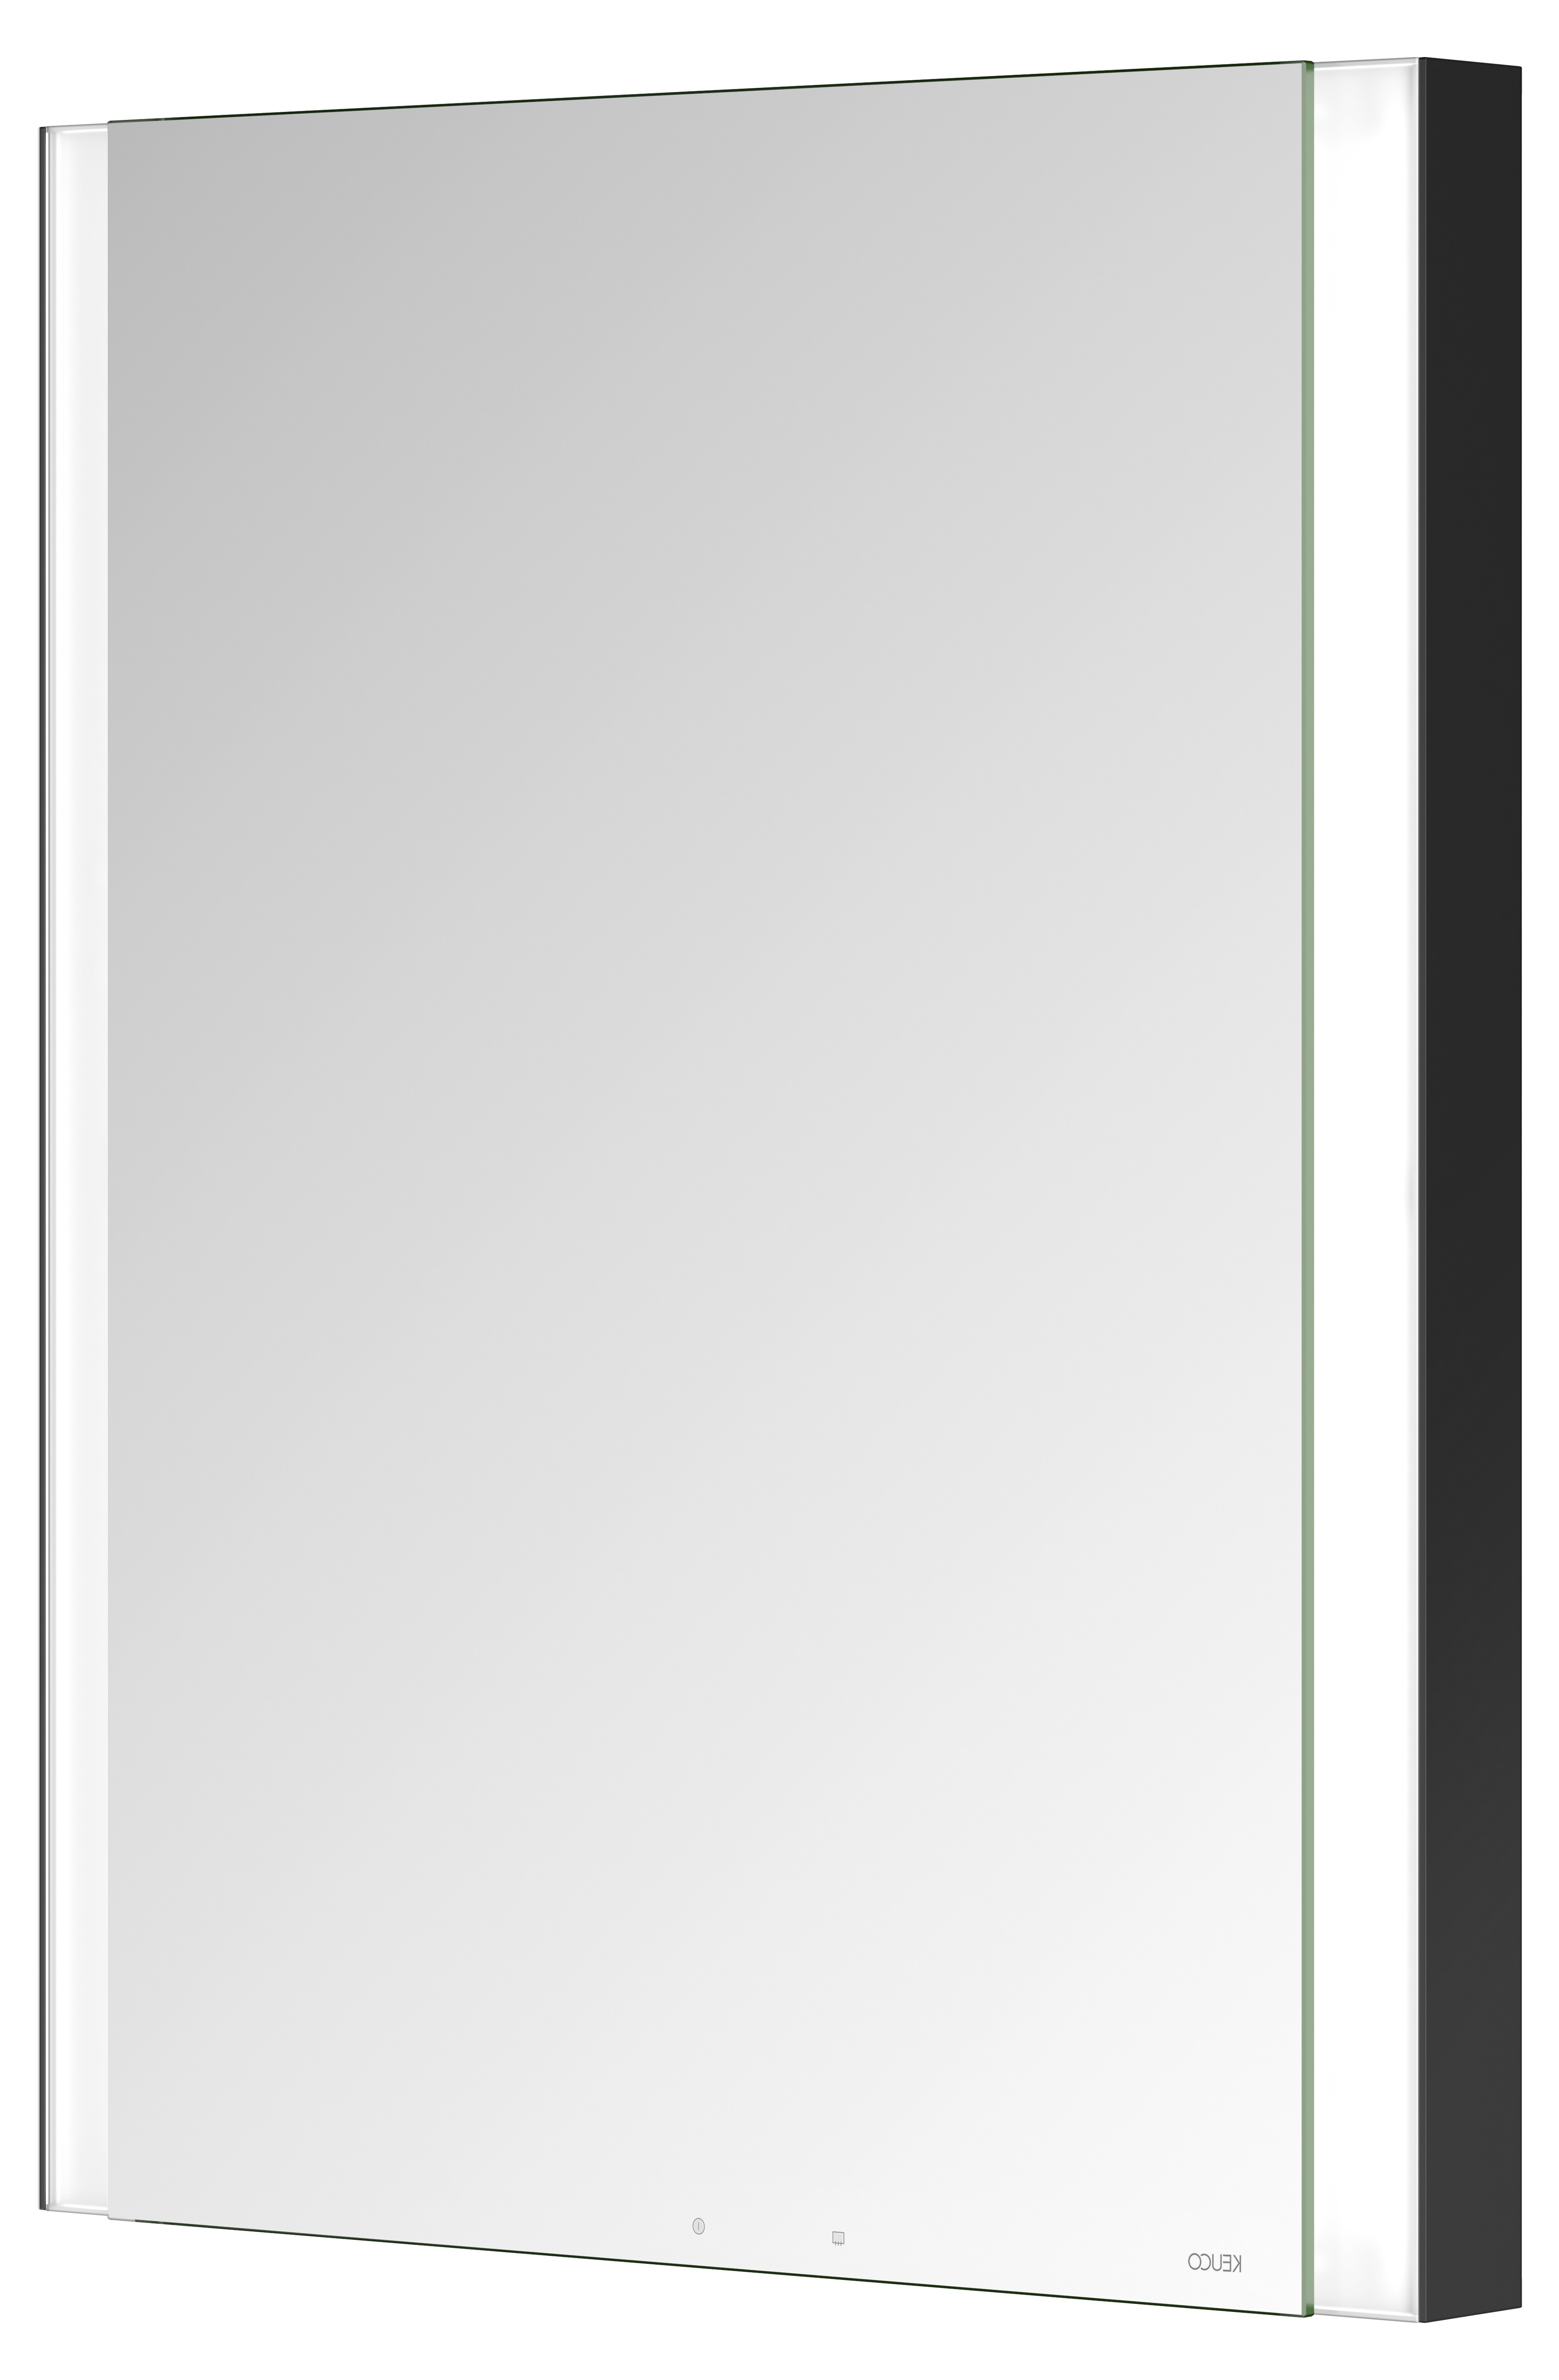 Правый зеркальный шкаф с подсветкой и подогревом для встраиваемого монтажа KEUCO Somaris 14511 371101 115 мм х 600 мм х 710 мм, с 1 поворотной дверцей, цвет корпуса Чёрный матовый